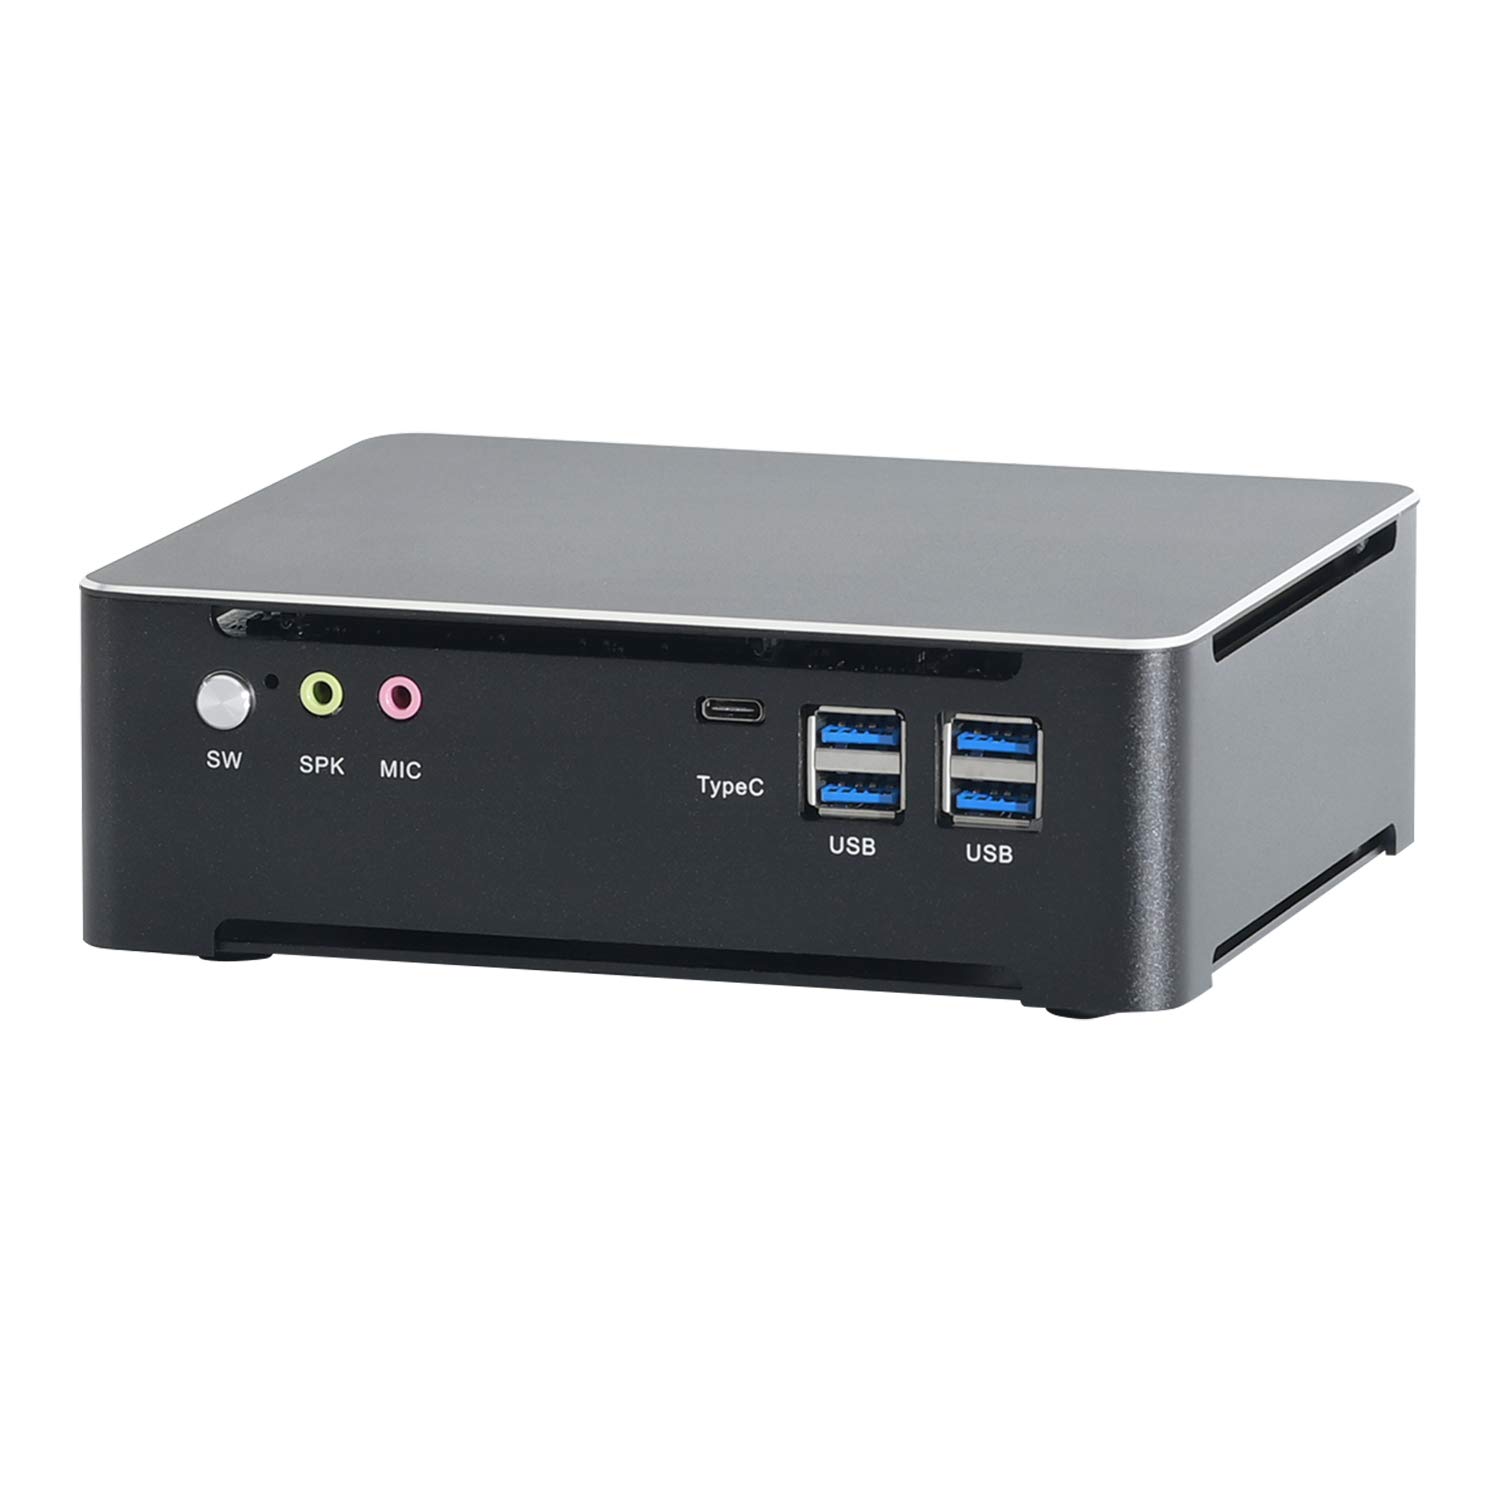 HUNSN 4K Mini PC, Desktop Computer, Server, 6 Cores I7 8750H, BM21b, DP, HDMI, 6 x USB3.0, Type-C, LAN, Smart Fan, Barebone, NO RAM, NO Storage, NO System